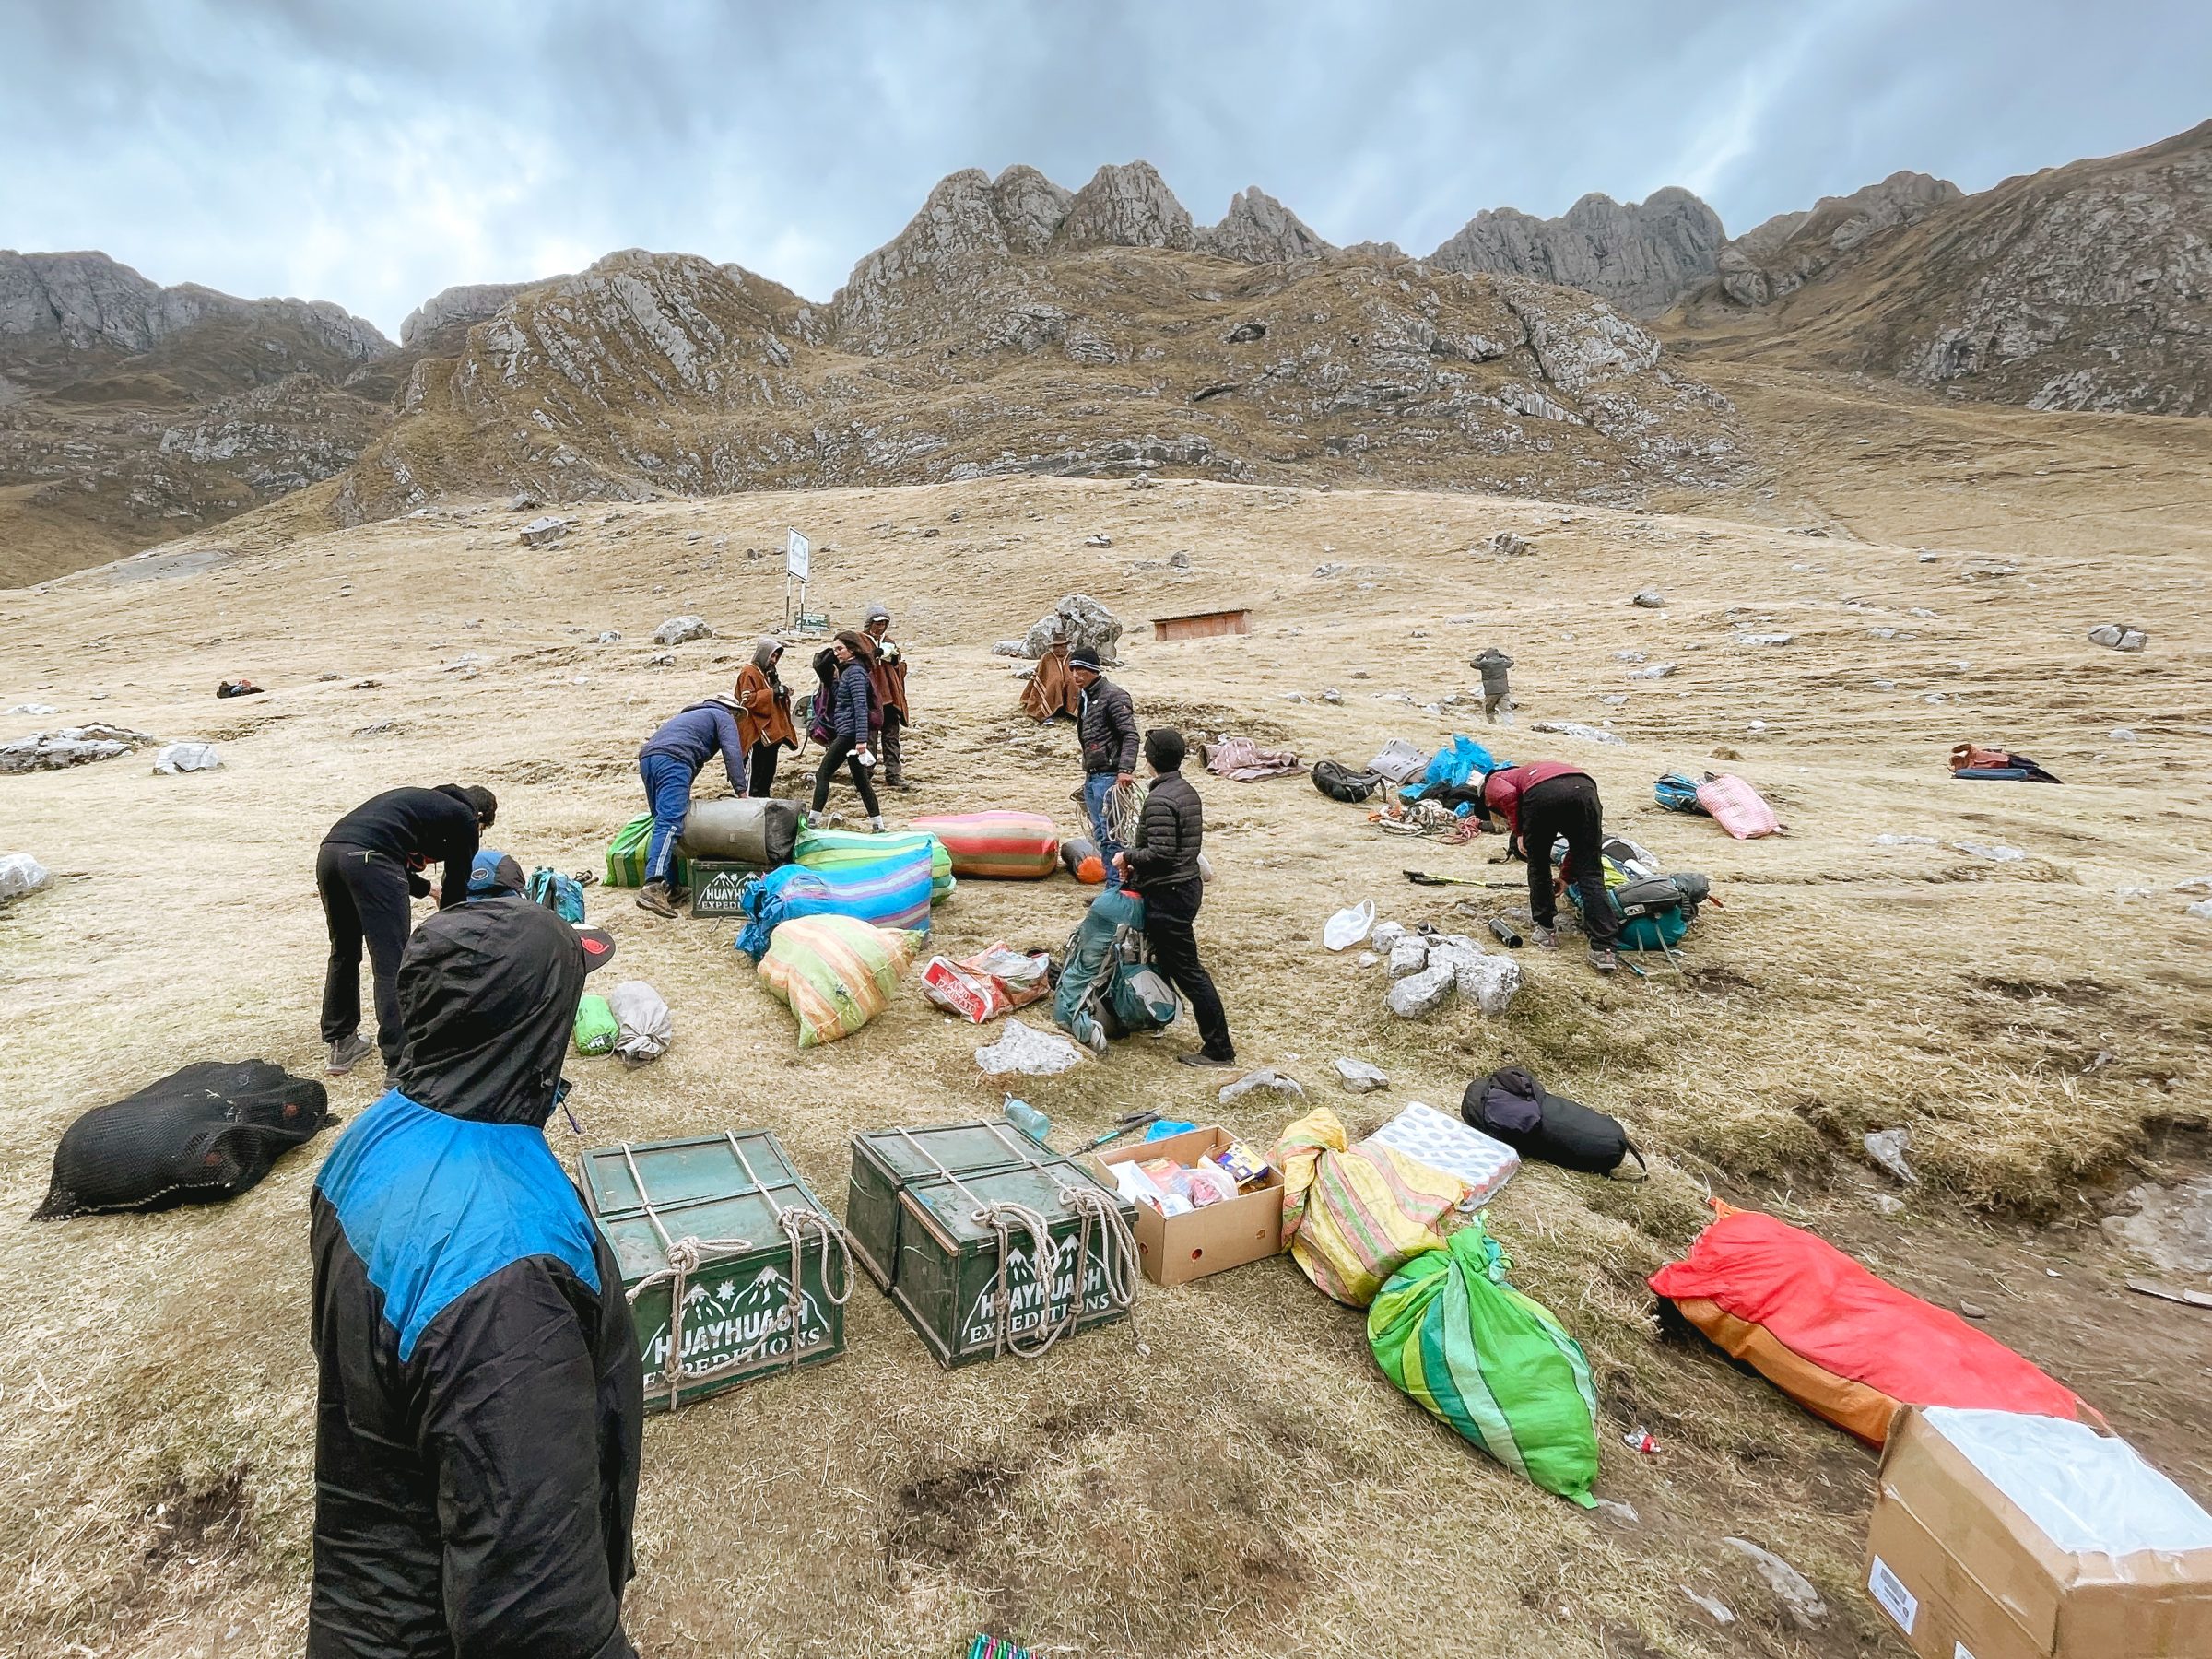 Die gesamte Ausrüstung für die Wanderung wurde gesammelt, um zu gehen | Huayhuash